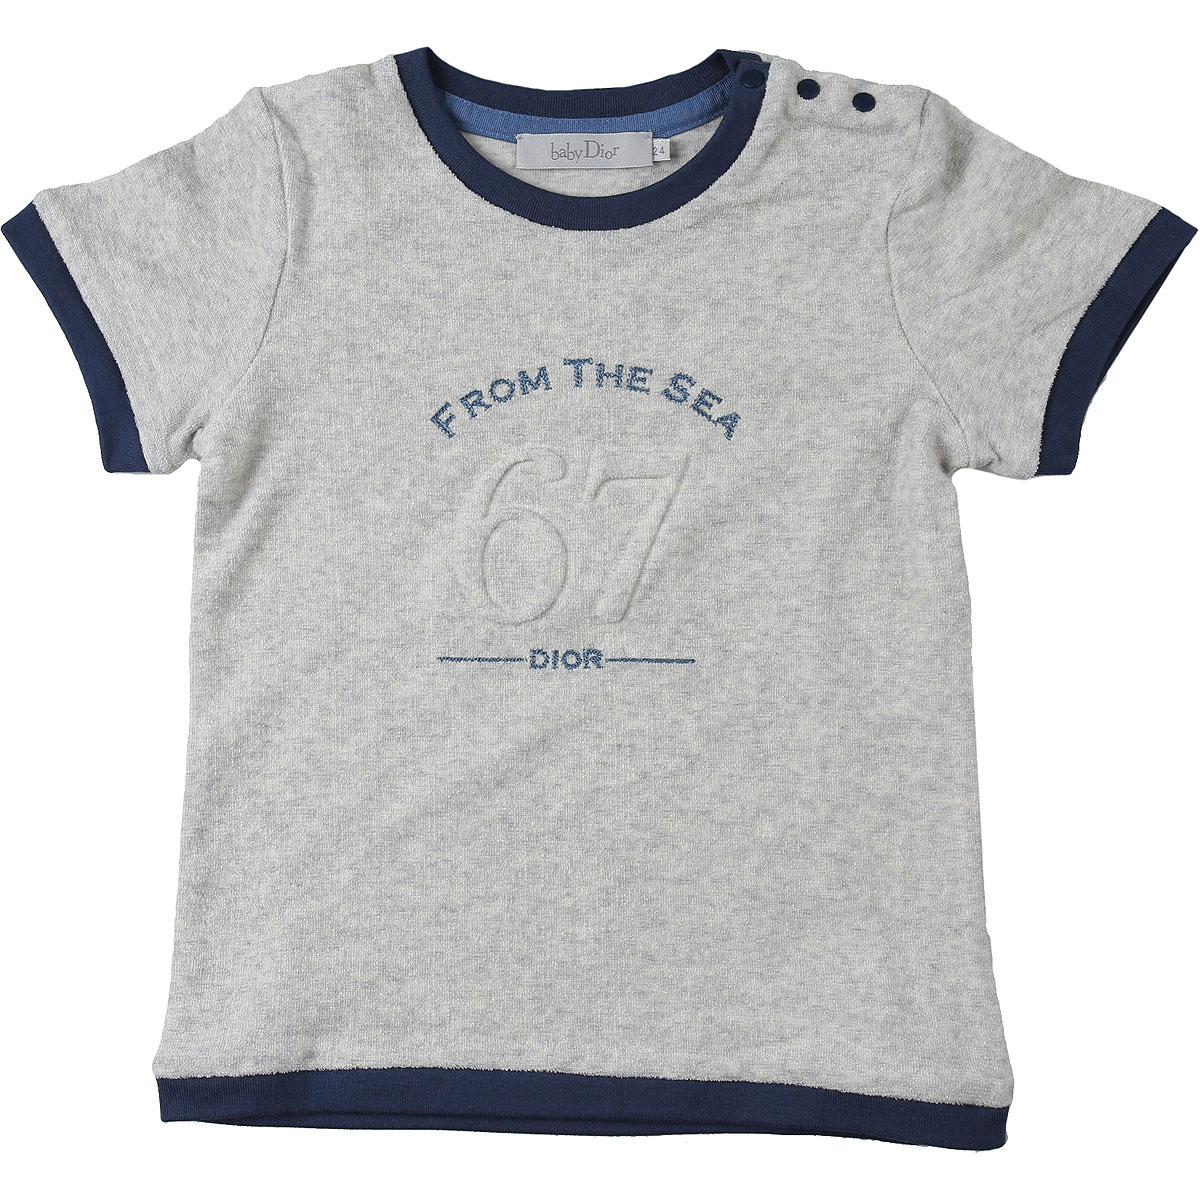 Baby Dior Baby T-Shirt für Jungen Günstig im Outlet Sale, Grau, Baumwolle, 2017, 18M 2Y 3Y